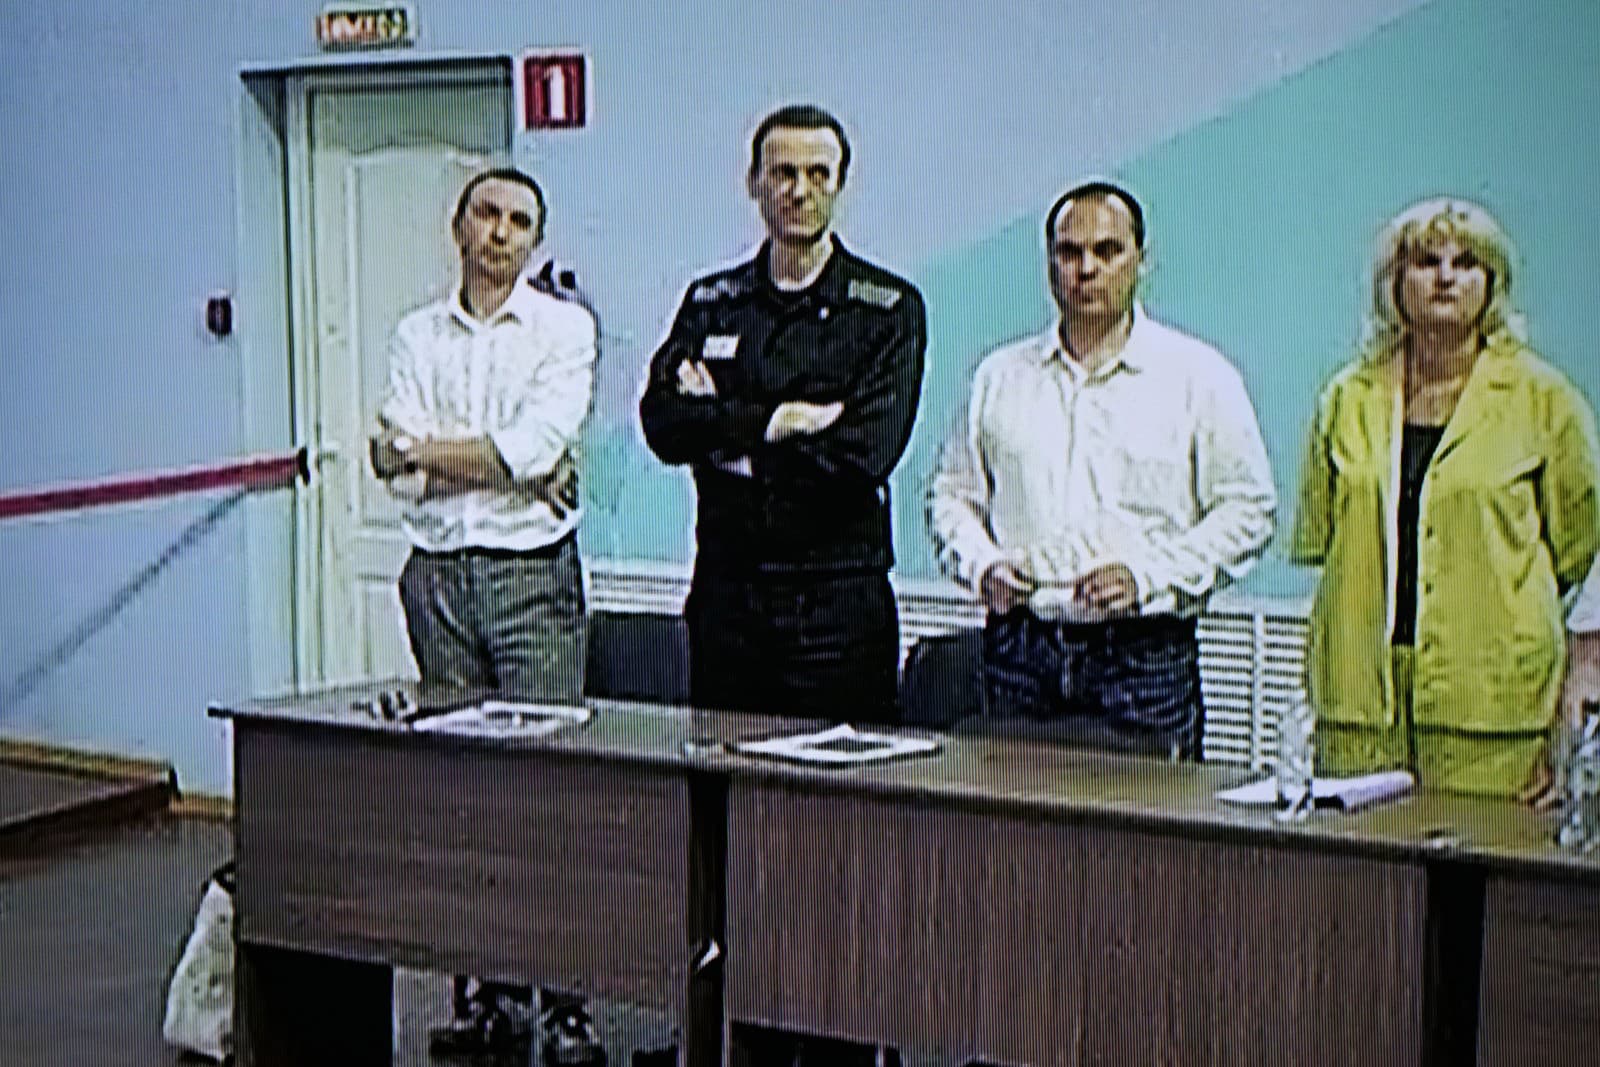 Ruský opozičný vodca Alexej Navaľnyj bol videný na televíznej obrazovke, ako hovorí so svojimi právnikmi, ako sa objavuje vo videu, ktoré poskytla ruská federálna väzenská služba, počas vypočutia v kolónii v Melekhove.